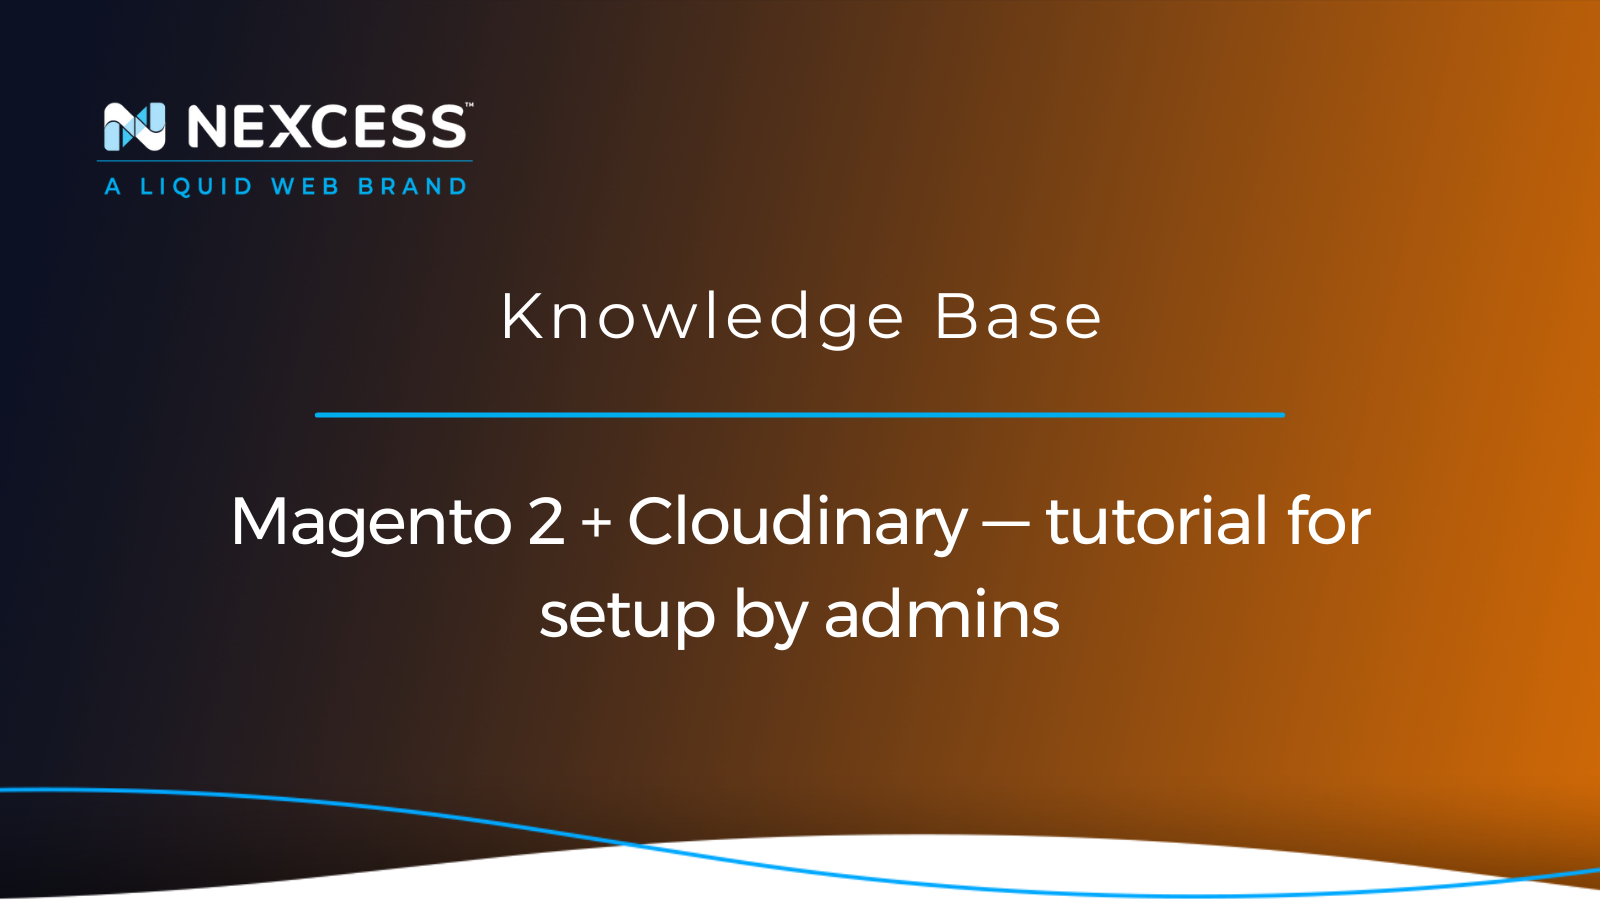 Magento 2 + Cloudinary — tutorial for setup by admins